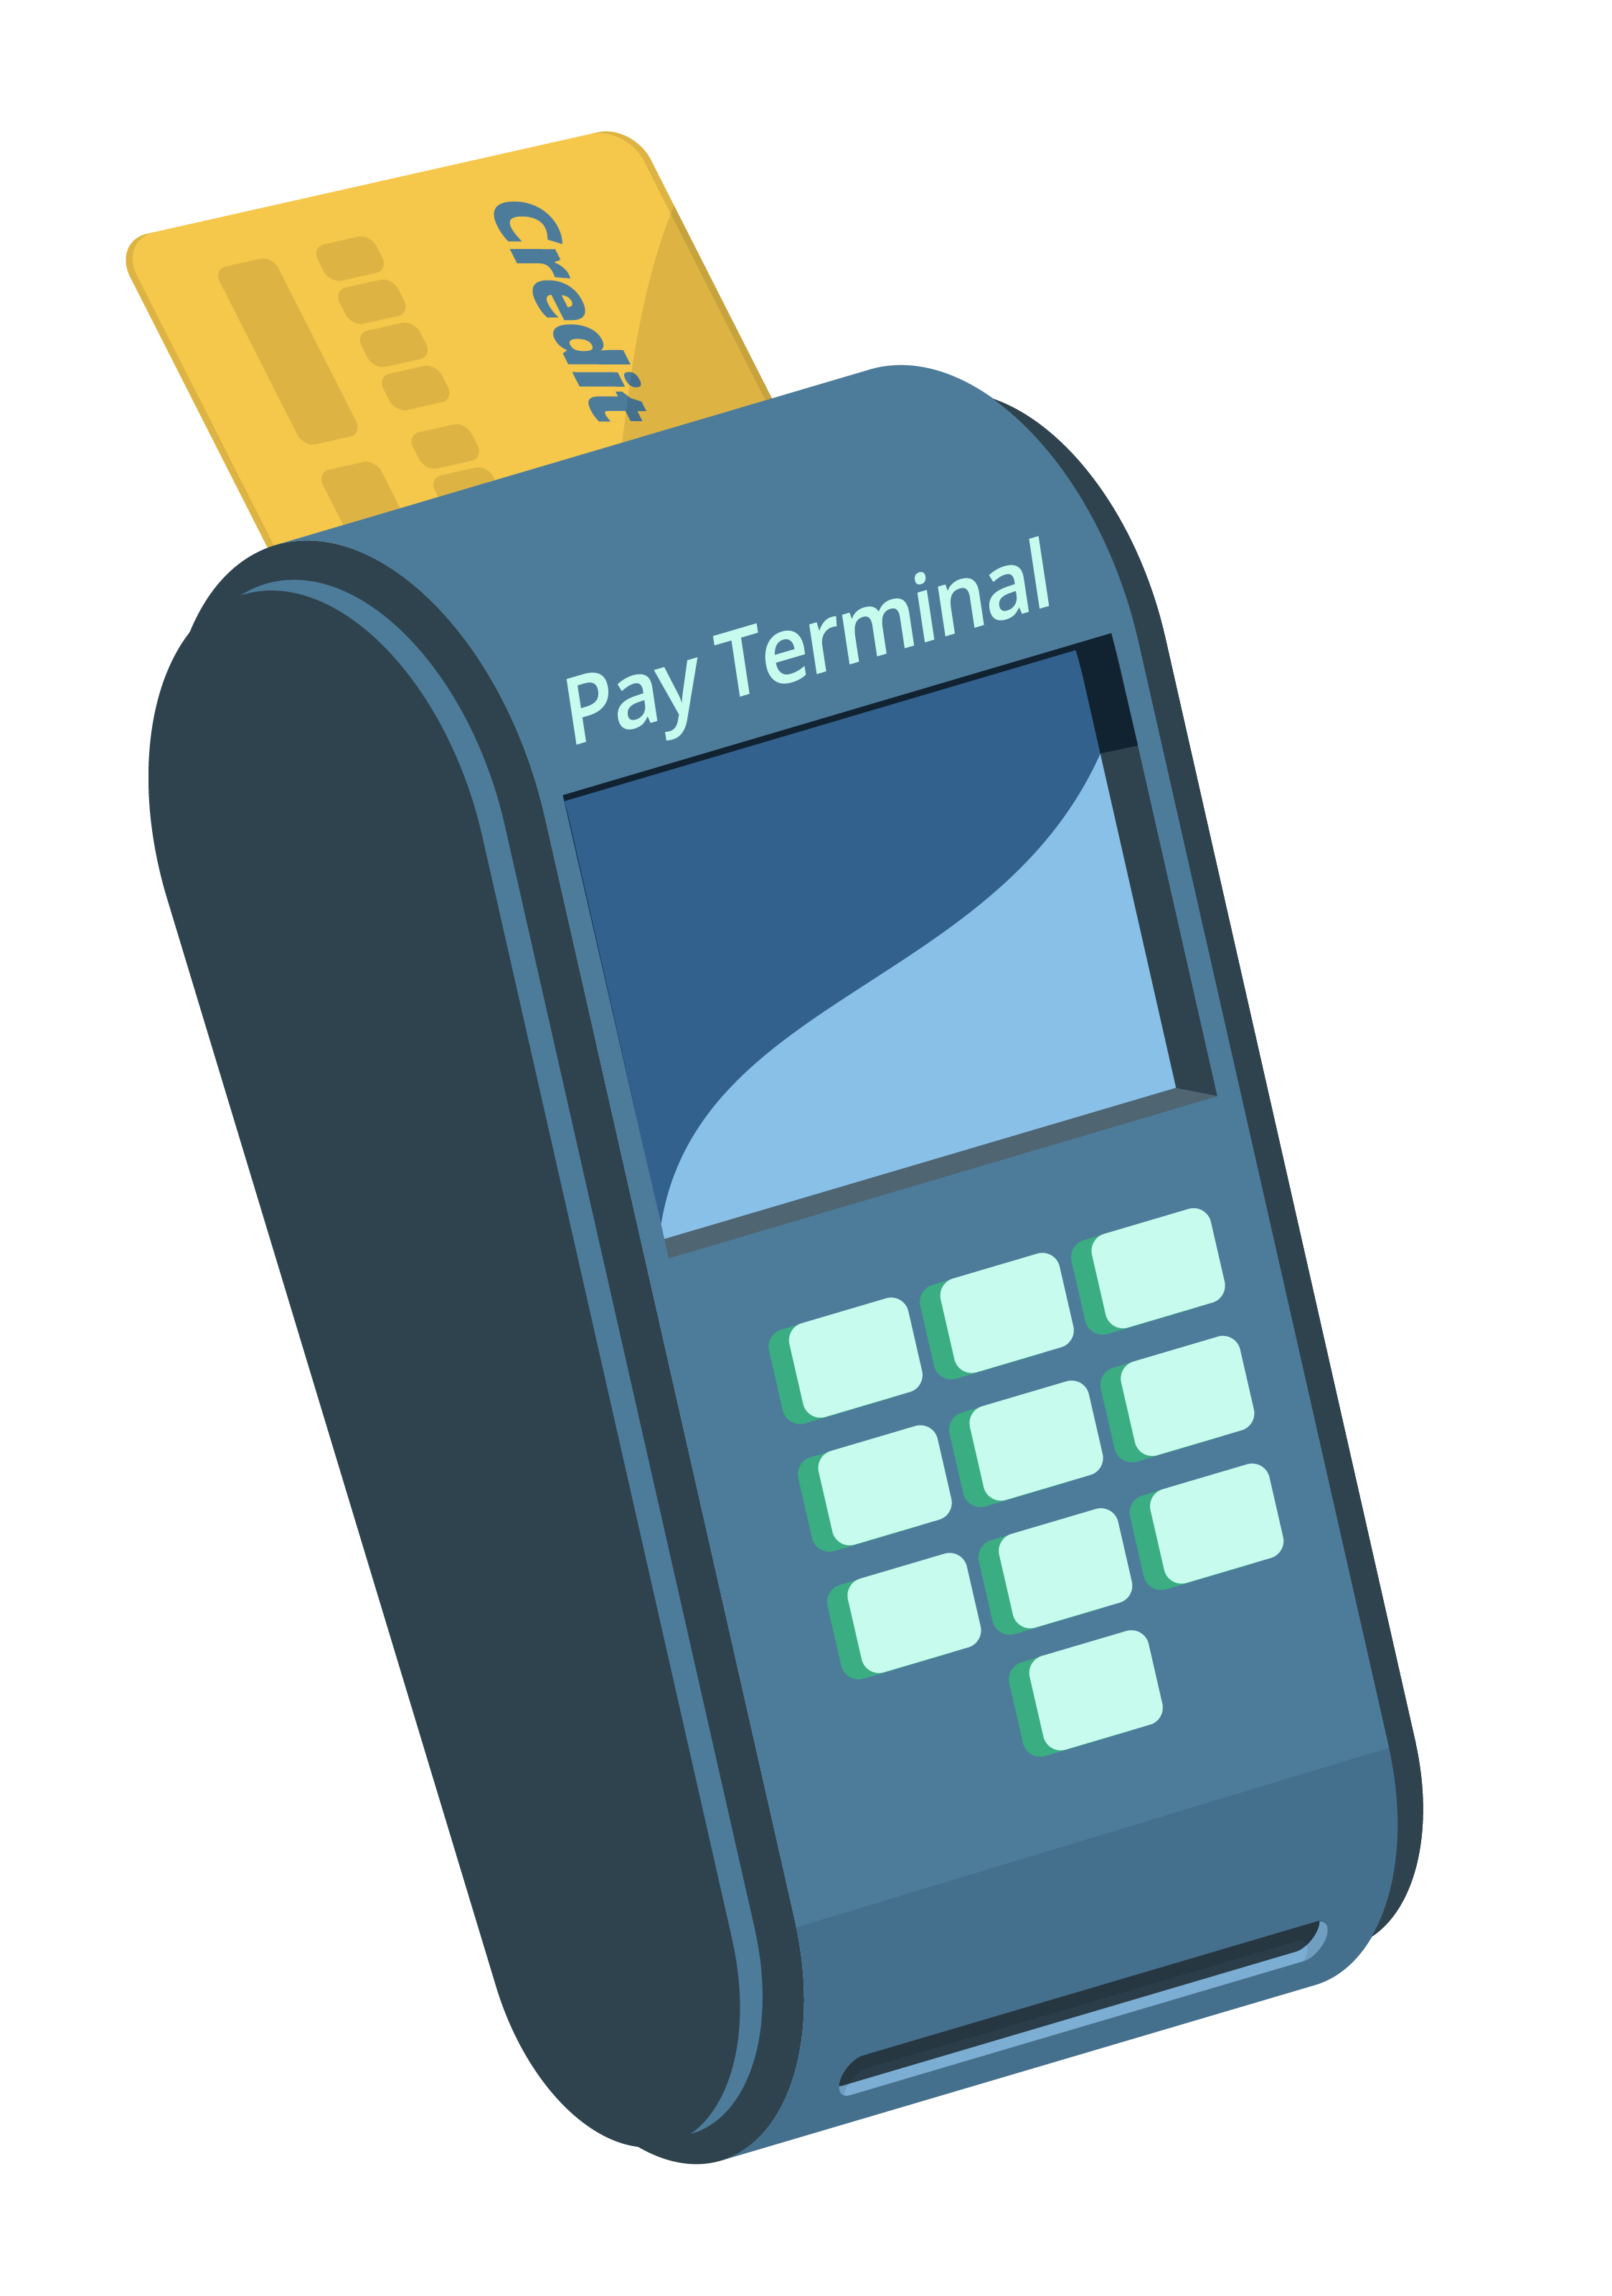 Payment Terminal